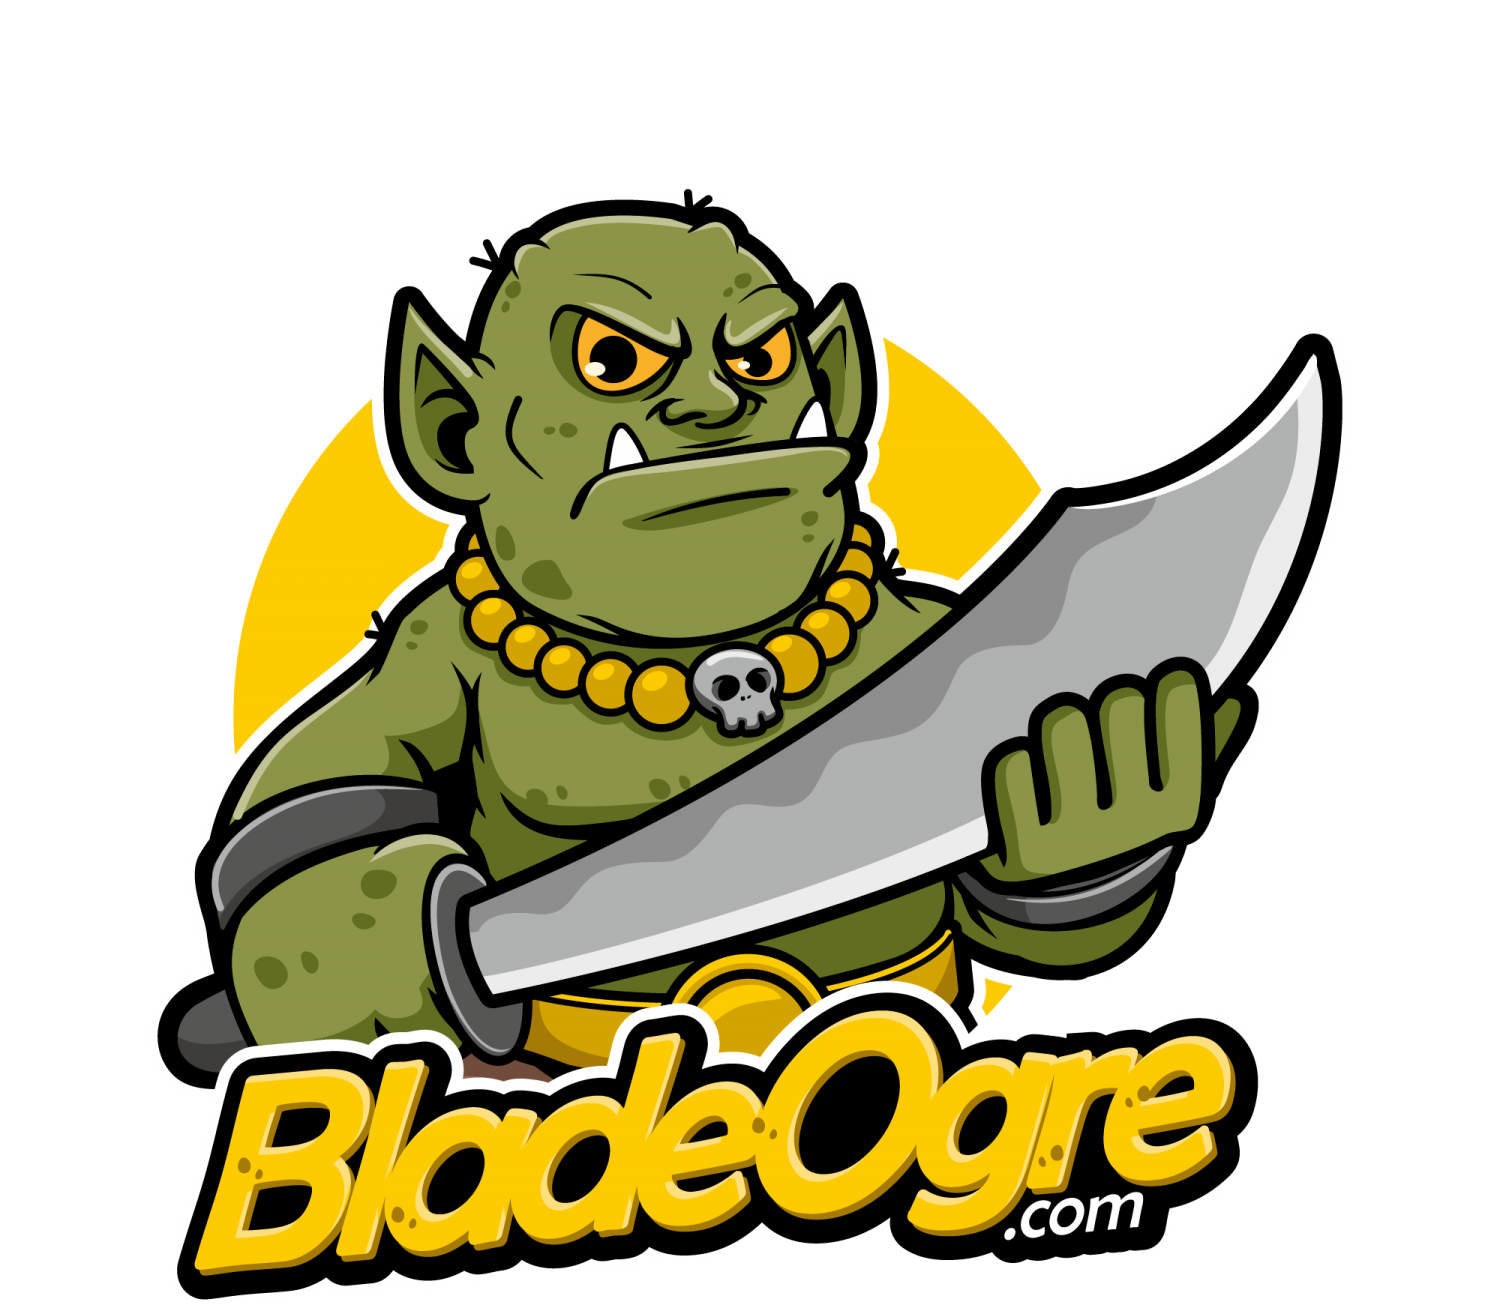 BladeOgre.com